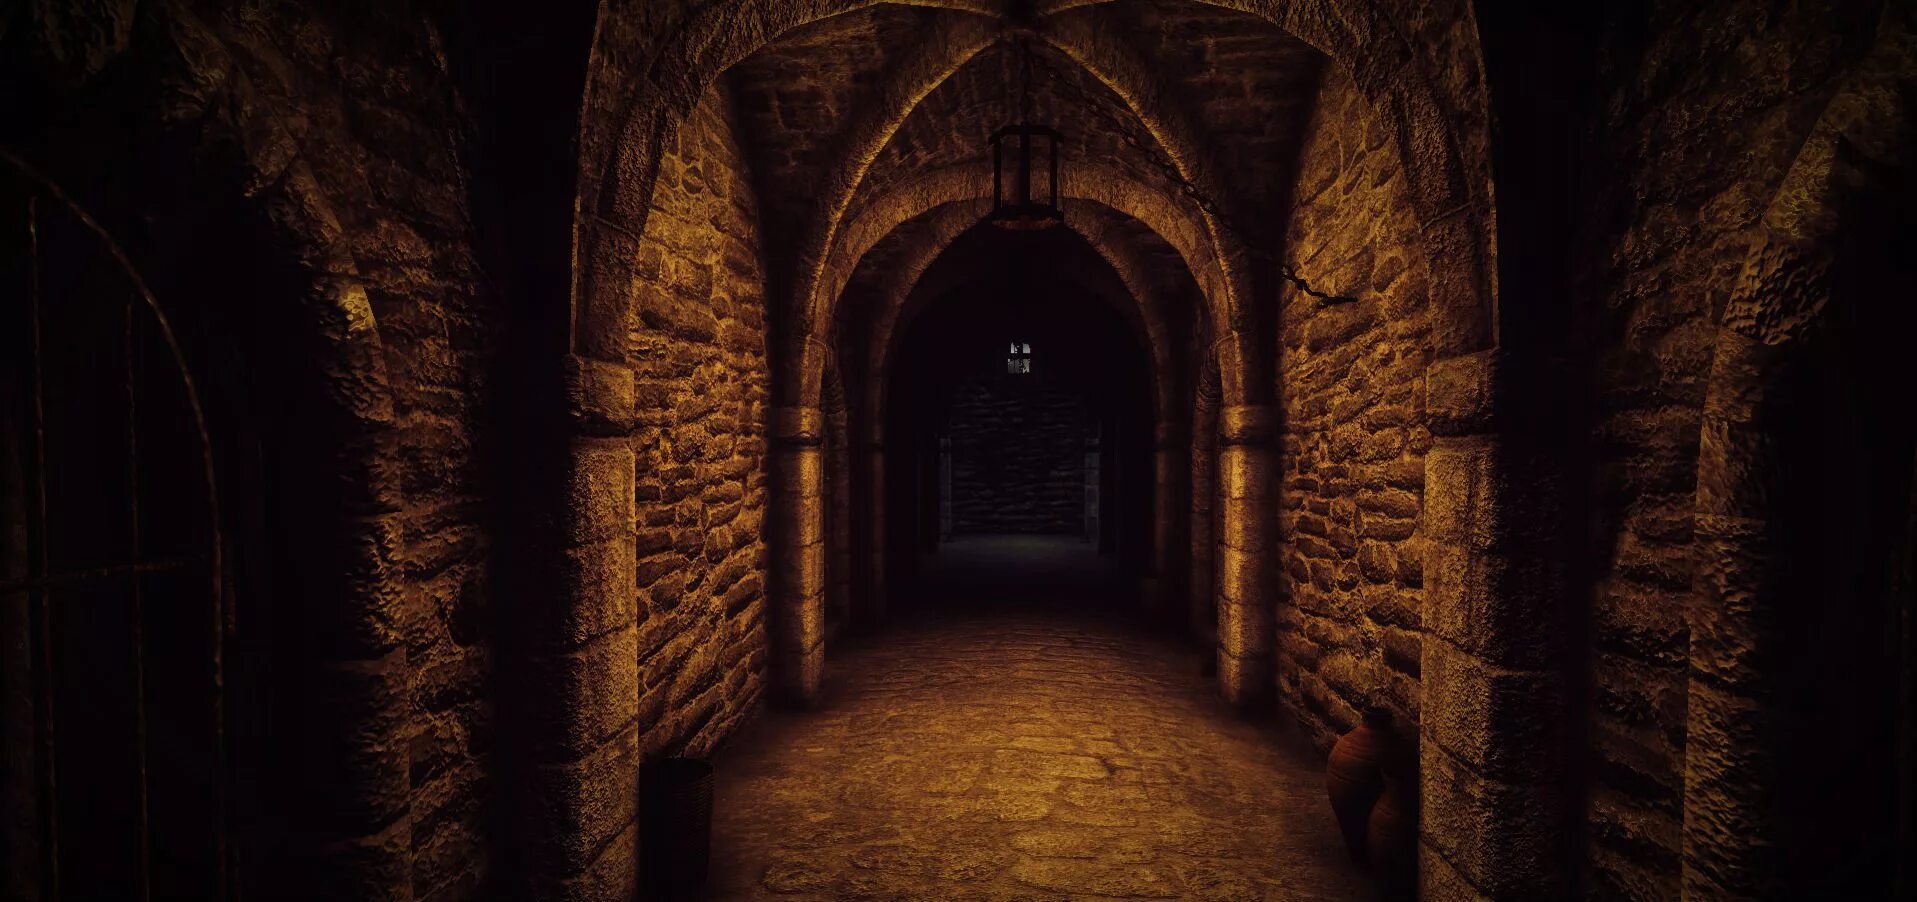 Открой дверь в подземелье. Хогвартс подземелье катакомбы. Комната в подземелье. Дверь в подземелье. Коридор подземелья.